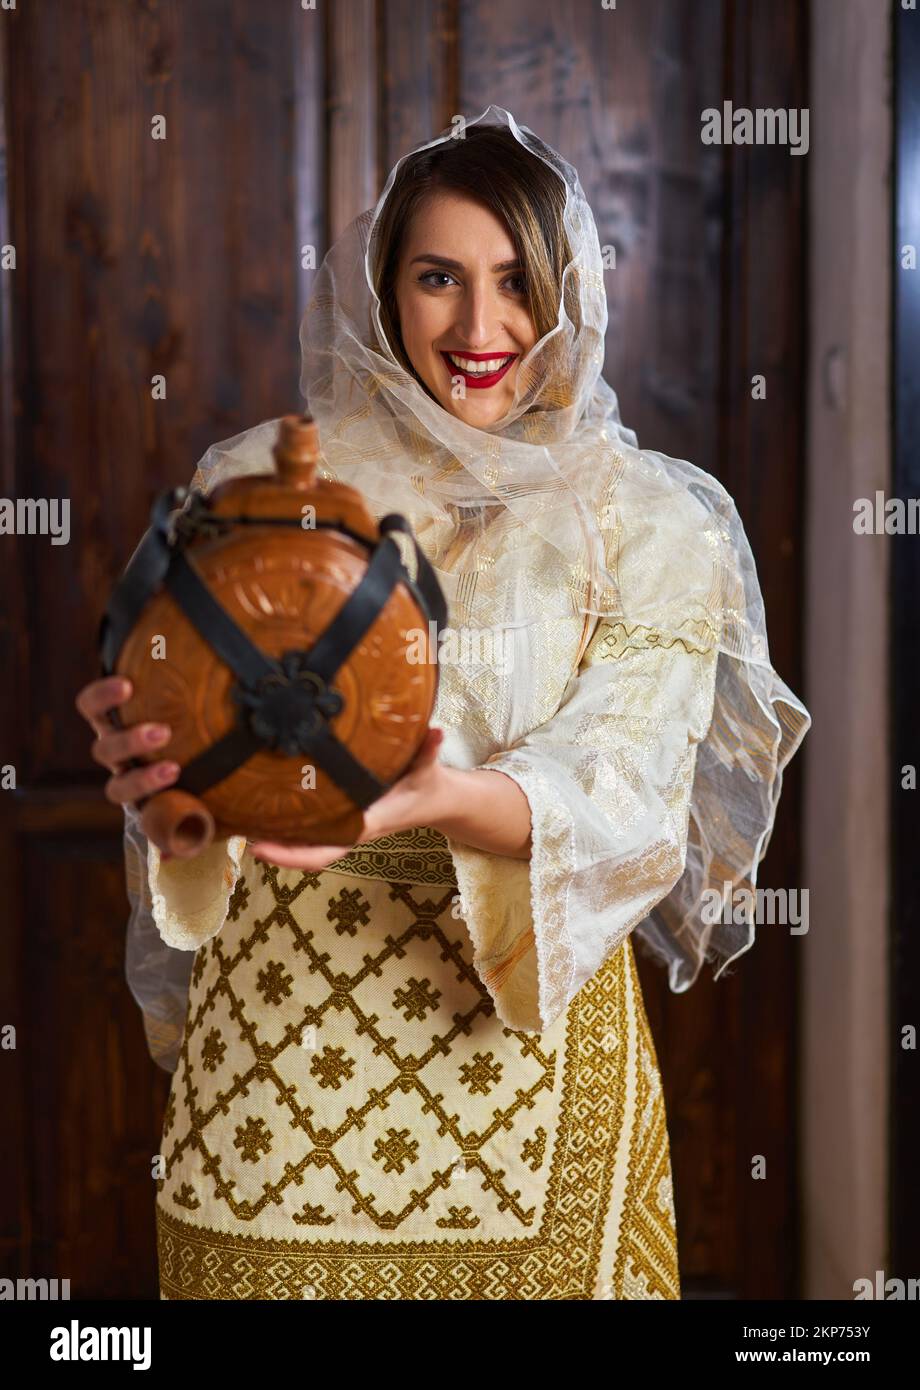 Giovane donna rumena in costume tradizionale sposa popolare in una casa d'epoca con una bottiglia di vino in legno Foto Stock